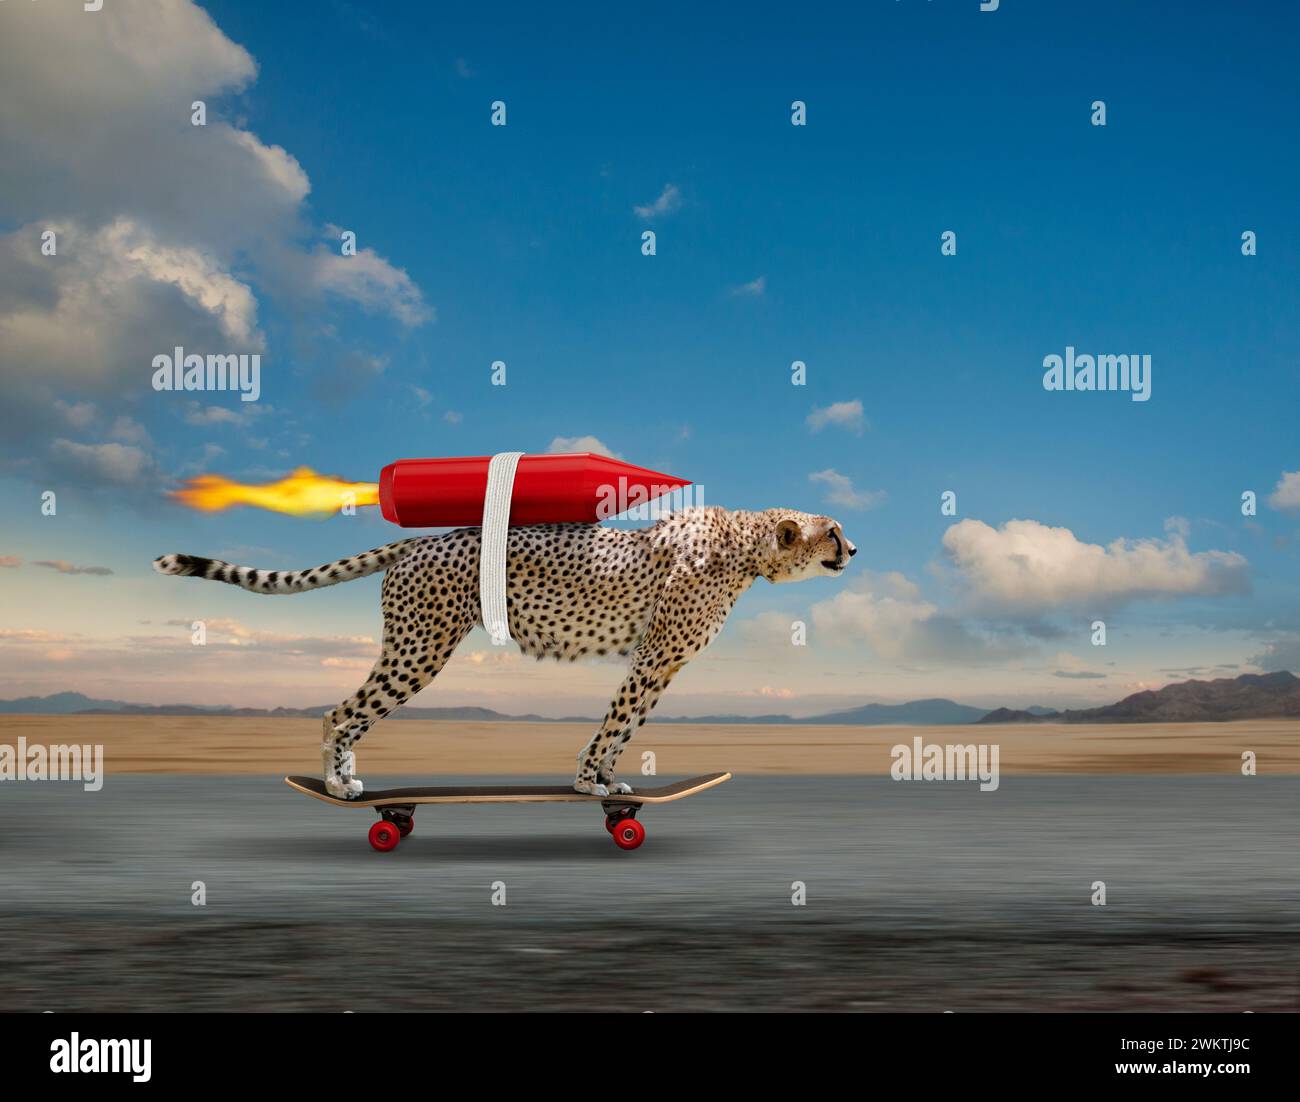 Un guépard propulsé par une fusée descend une route sur une planche à roulettes dans une métaphore visuelle drôle de la vitesse. Banque D'Images